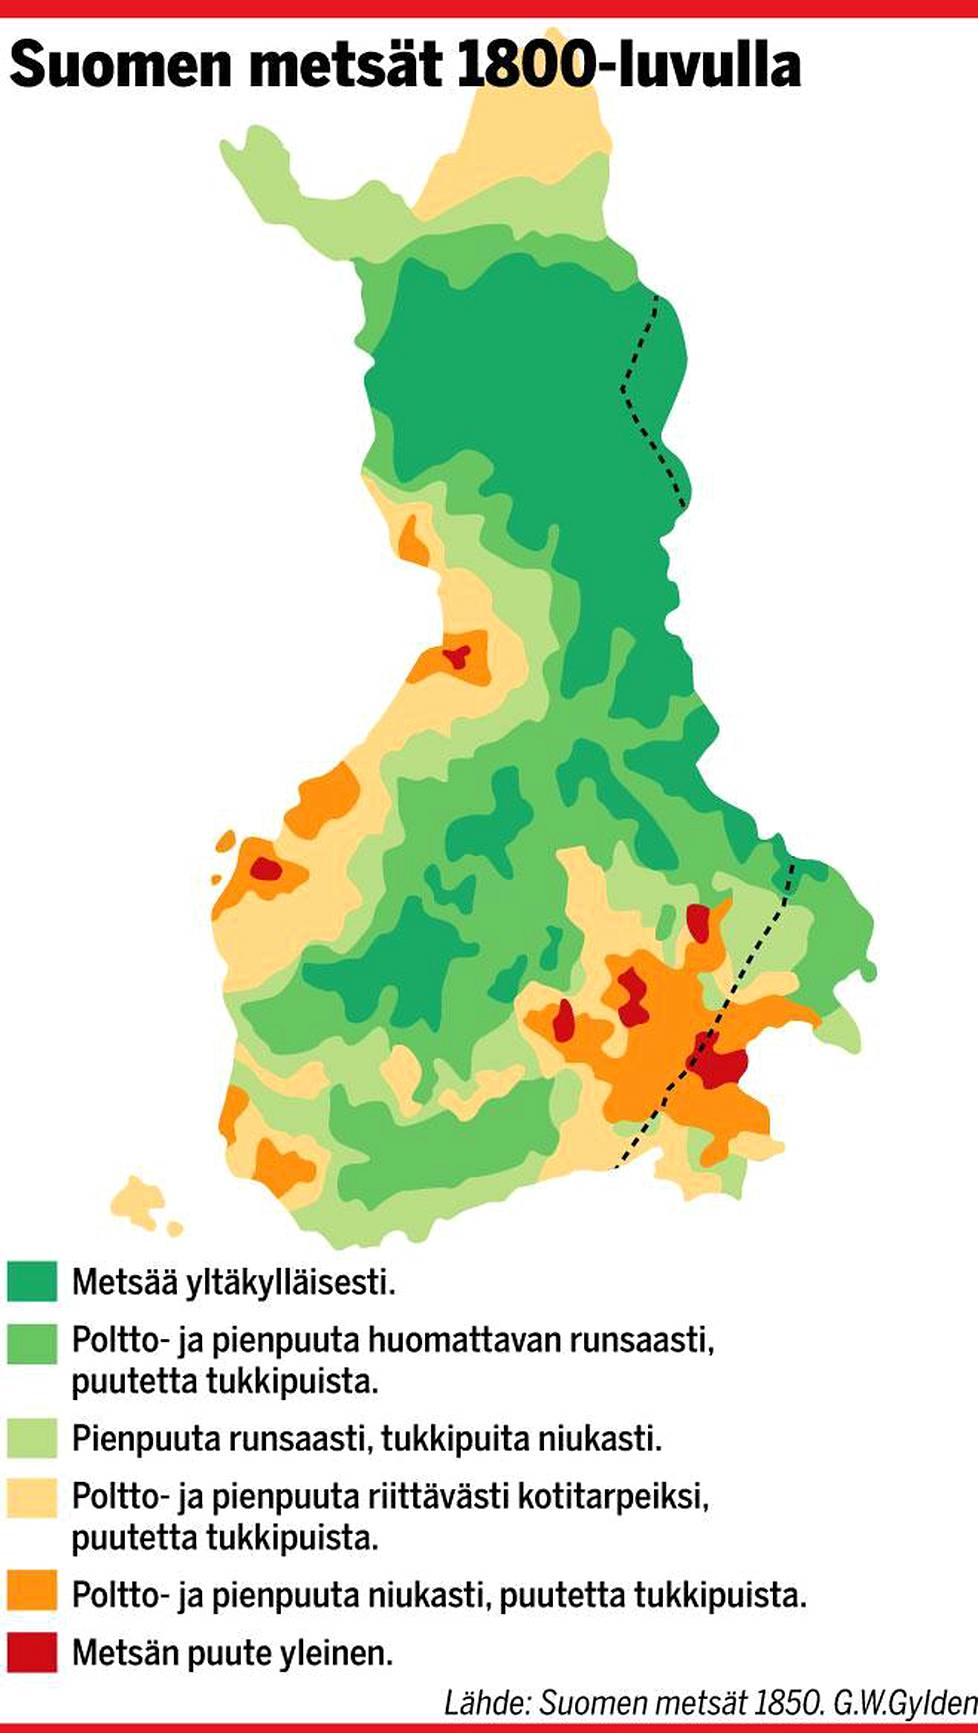 Suomen metsien häviäminen on huolestuttanut 1600-luvulta asti – ennen  pelättiin höyrysahoja, nyt ylisuuria hakkuita - Taloussanomat - Ilta-Sanomat